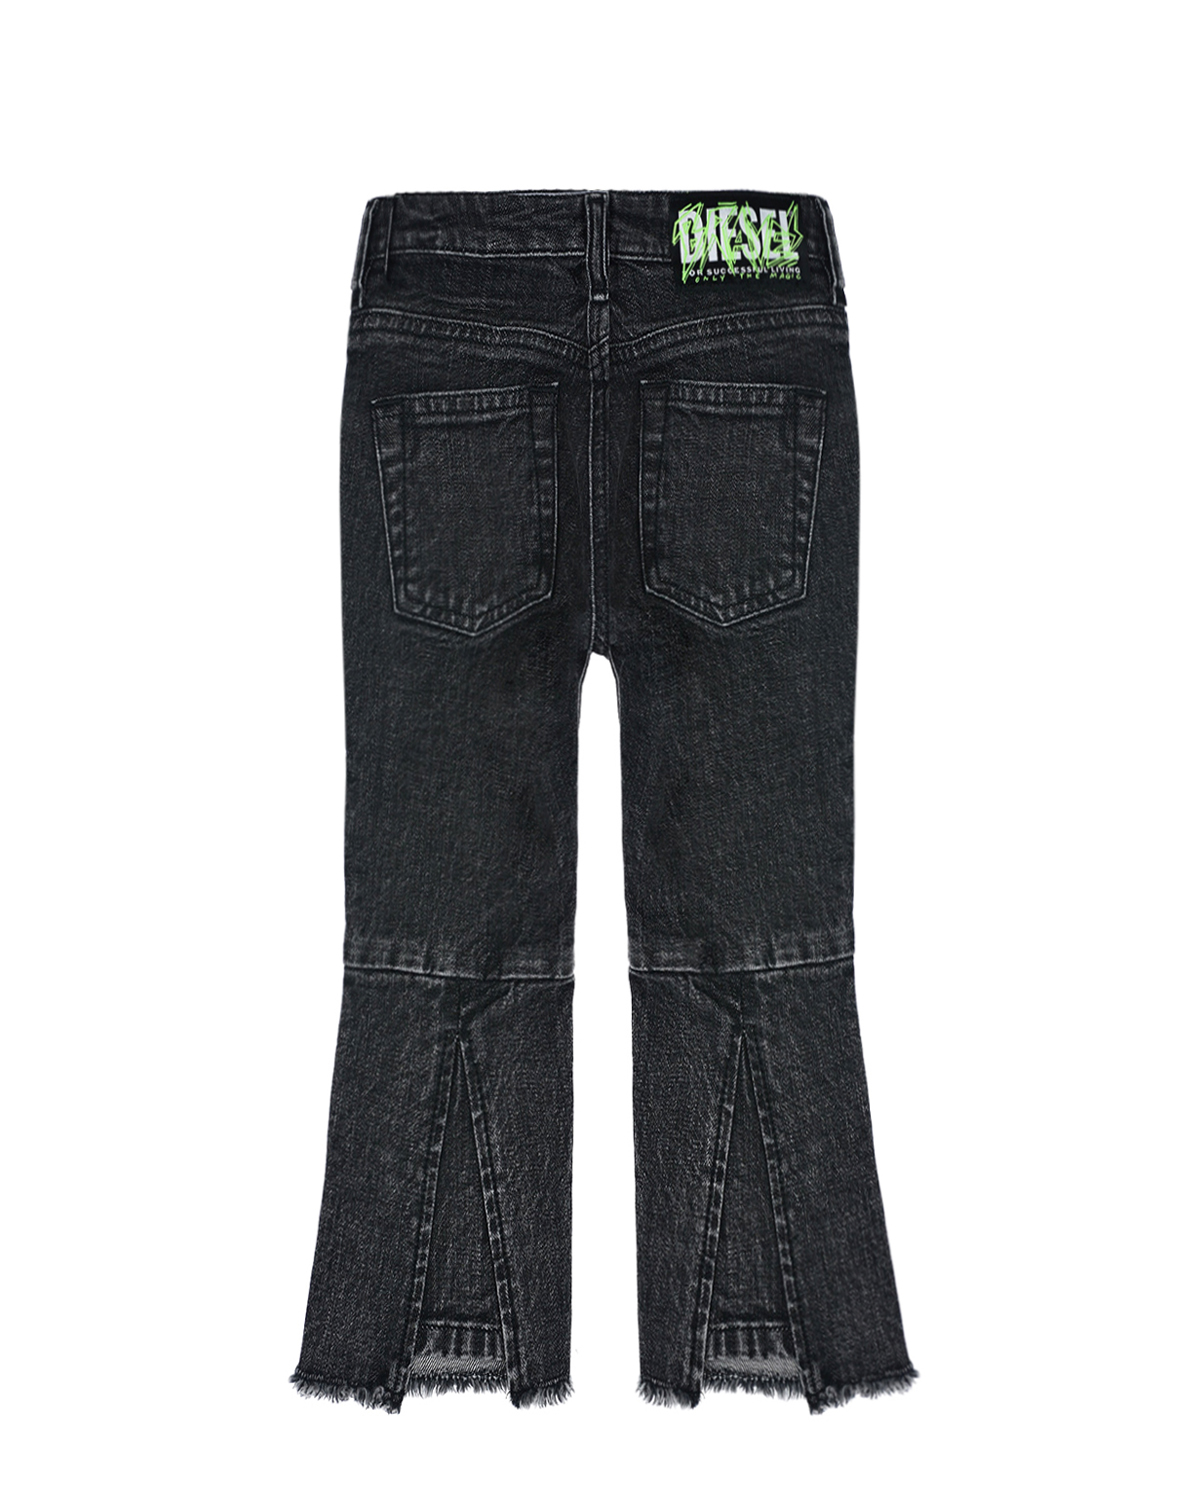 Расклешенные джинсы на молнии Diesel детские, размер 140, цвет черный - фото 3